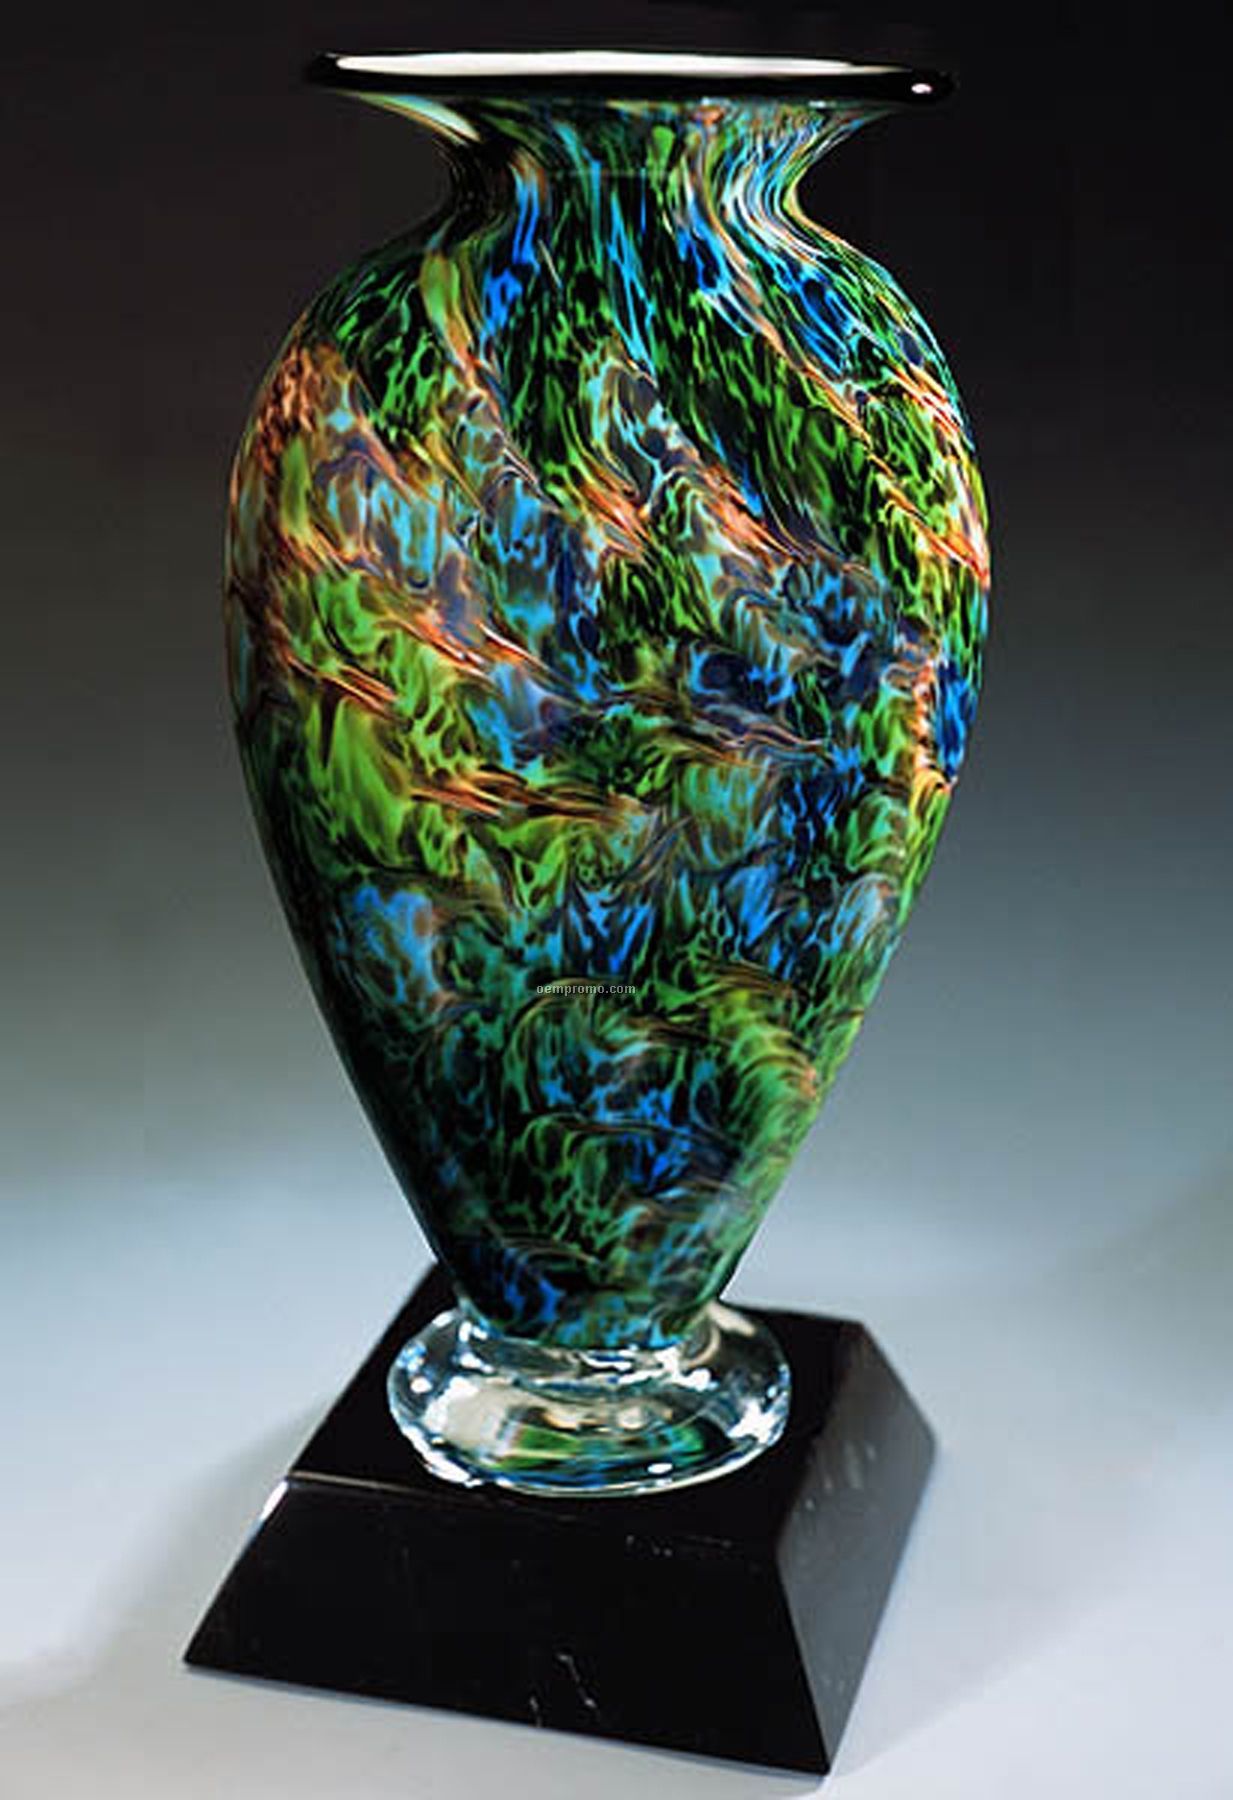 Jade Glen Mercury Sculpture Award W/O Base (3.75"X6")